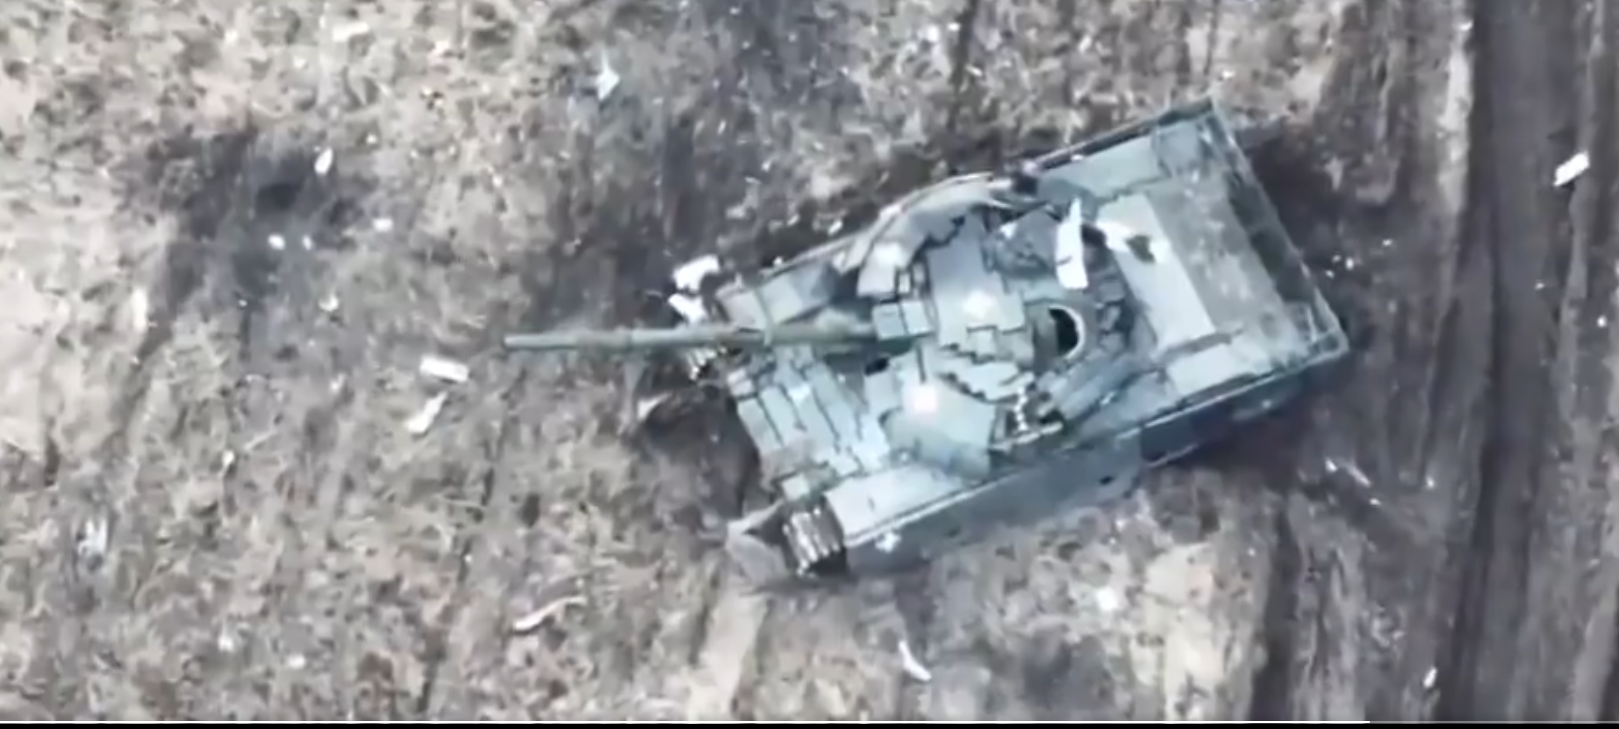 Βίντεο: Συνεχείς προσβολές των ουκρανικών δυνάμεων έξω από την ρωσική συνοριακή πόλη του Μπέλγκοροντ